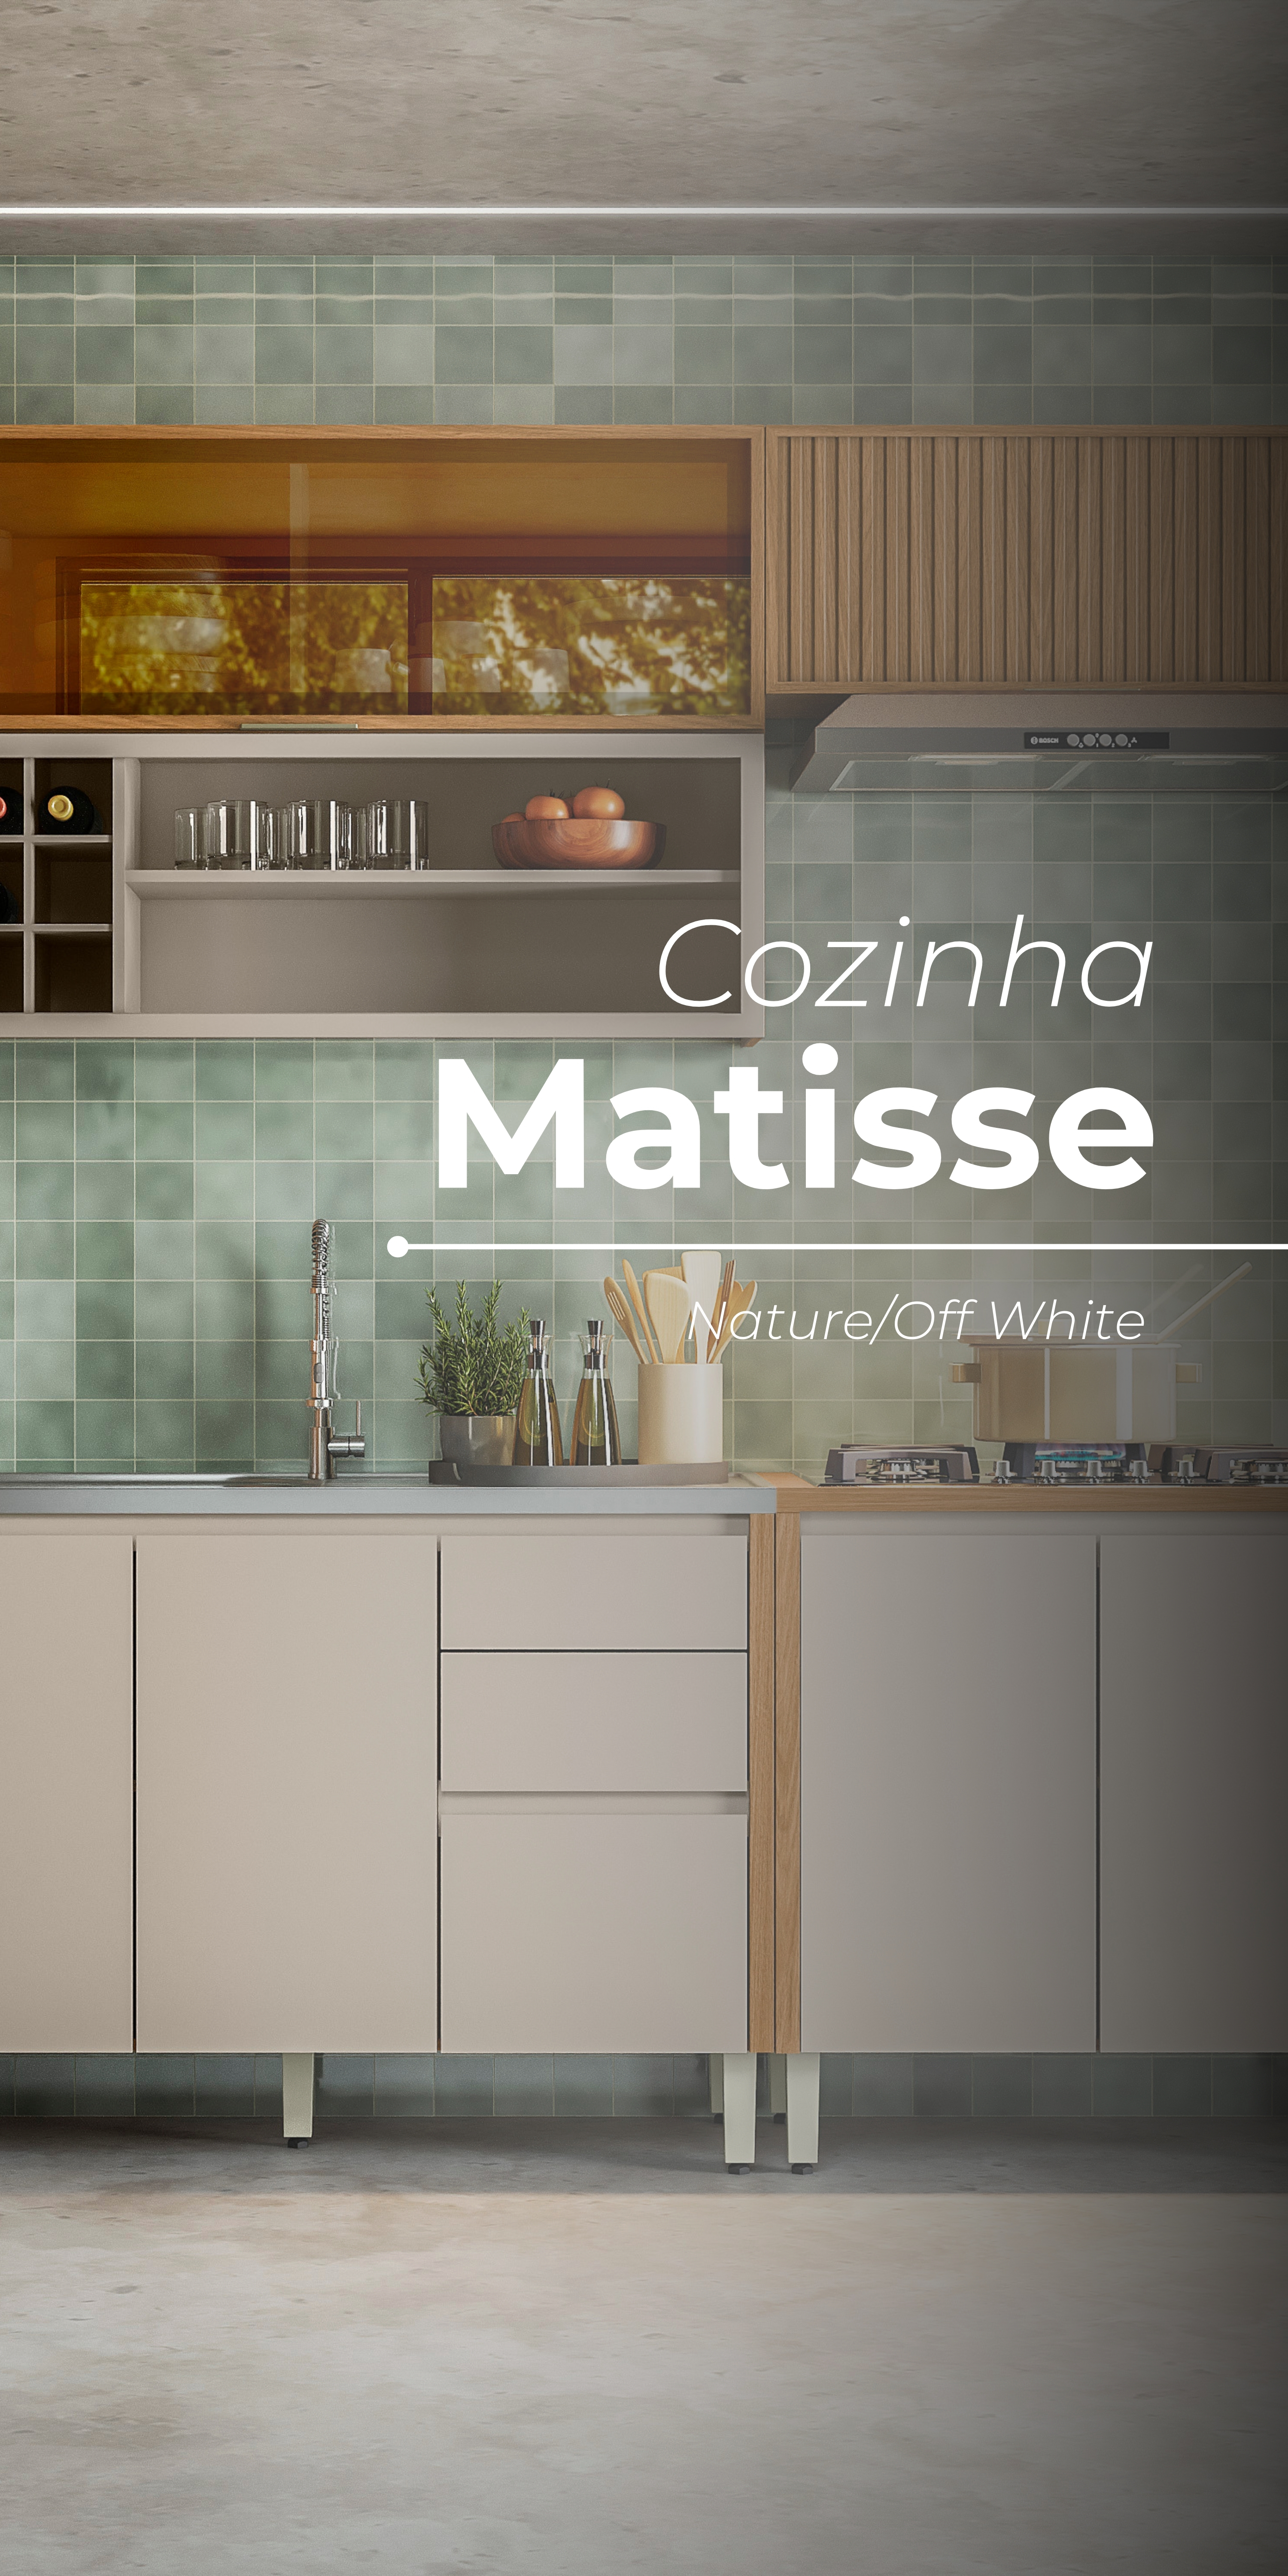 Cozinha Matisse